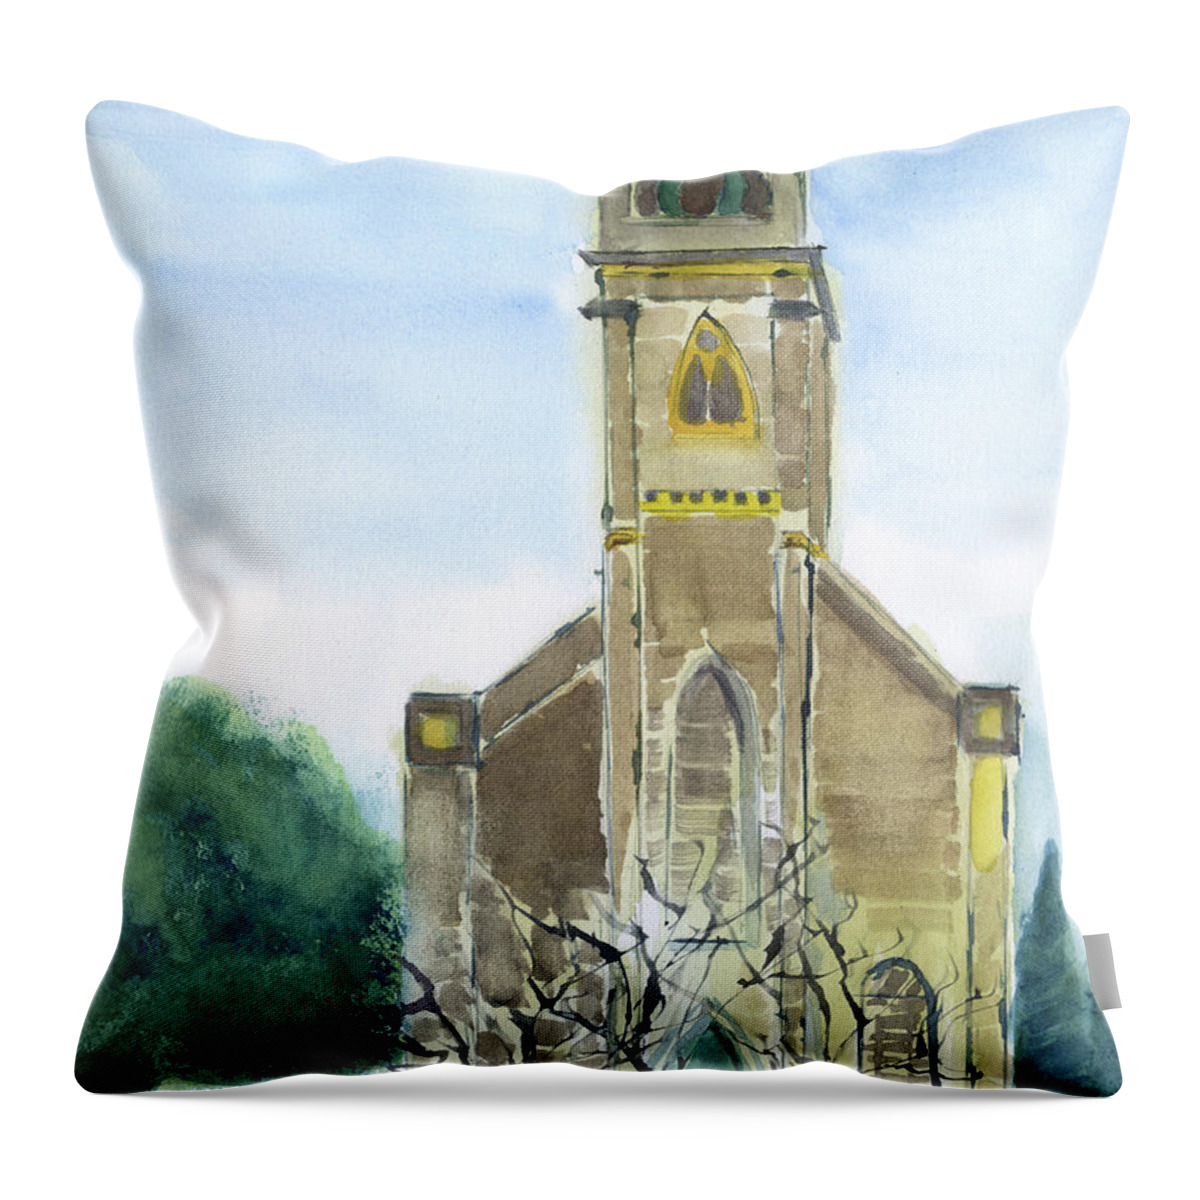 Stella Maris Church Throw Pillow featuring the painting Stella Maris Church by Frank Bright